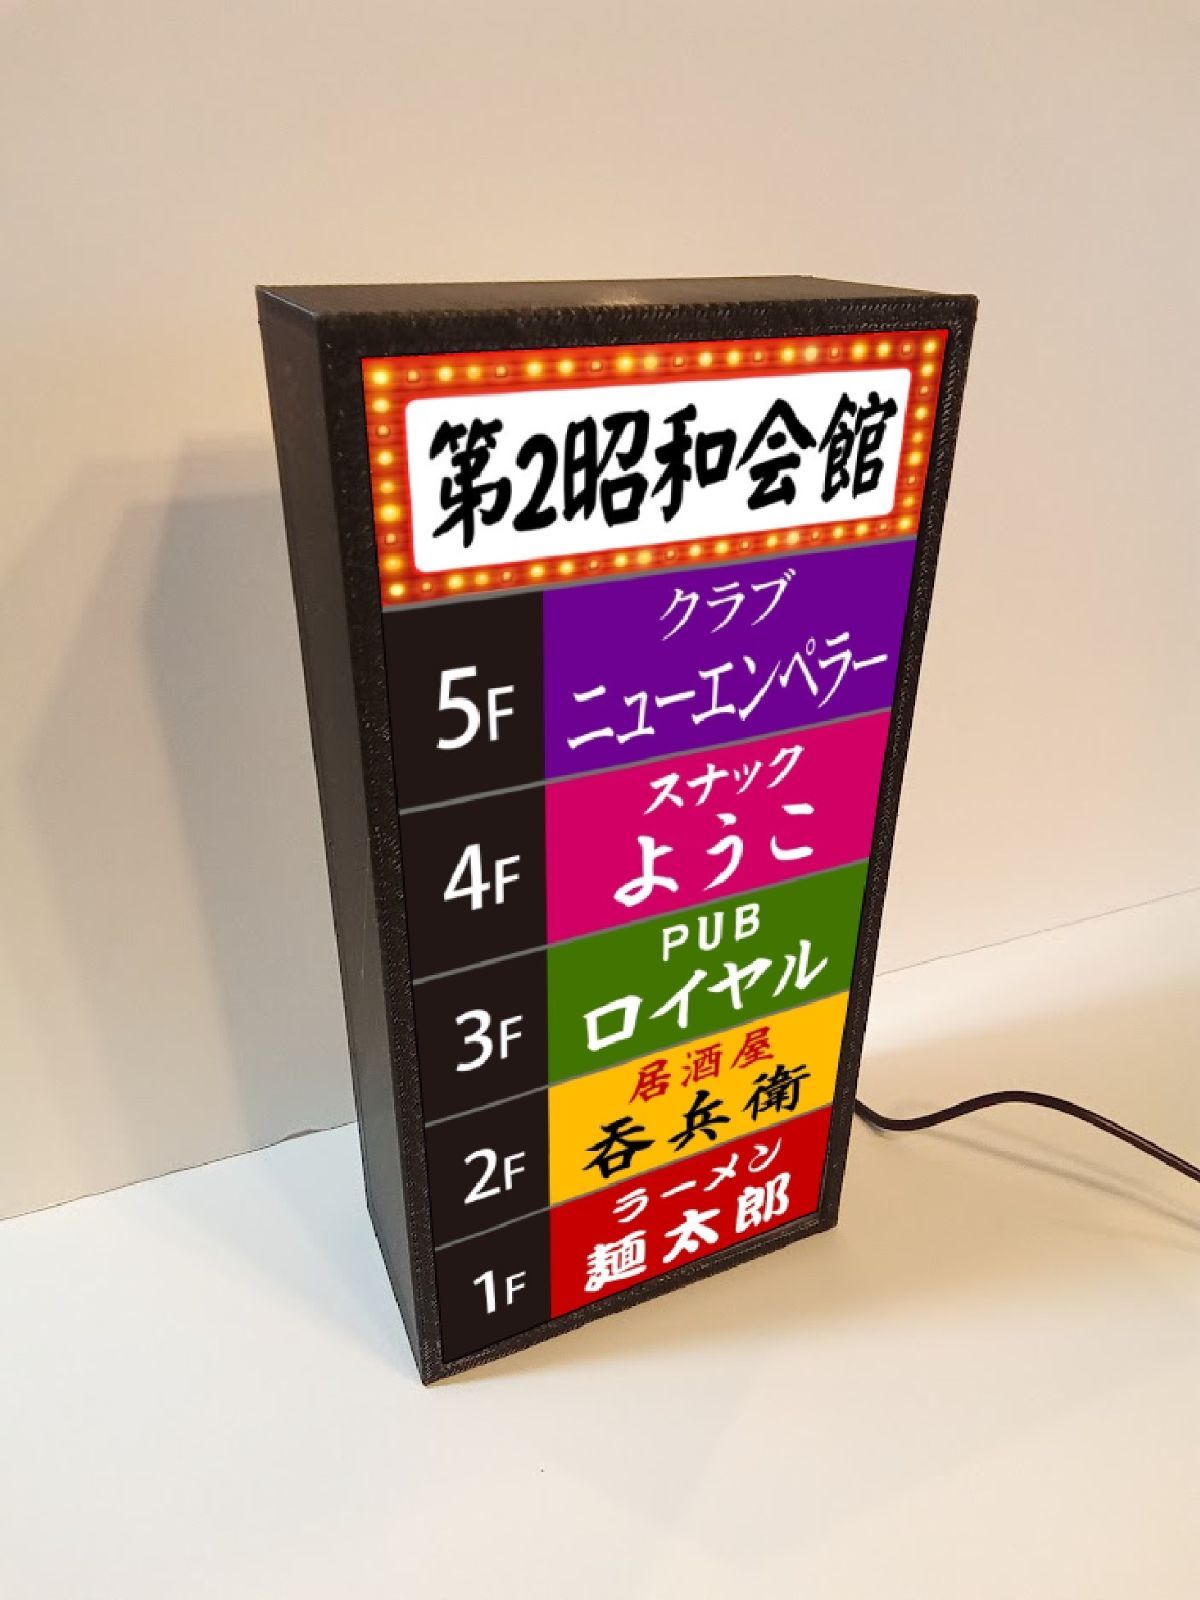 雑居ビル 昭和レトロ ネオン街 ミニチュア 看板 置物 雑貨 LEDライト